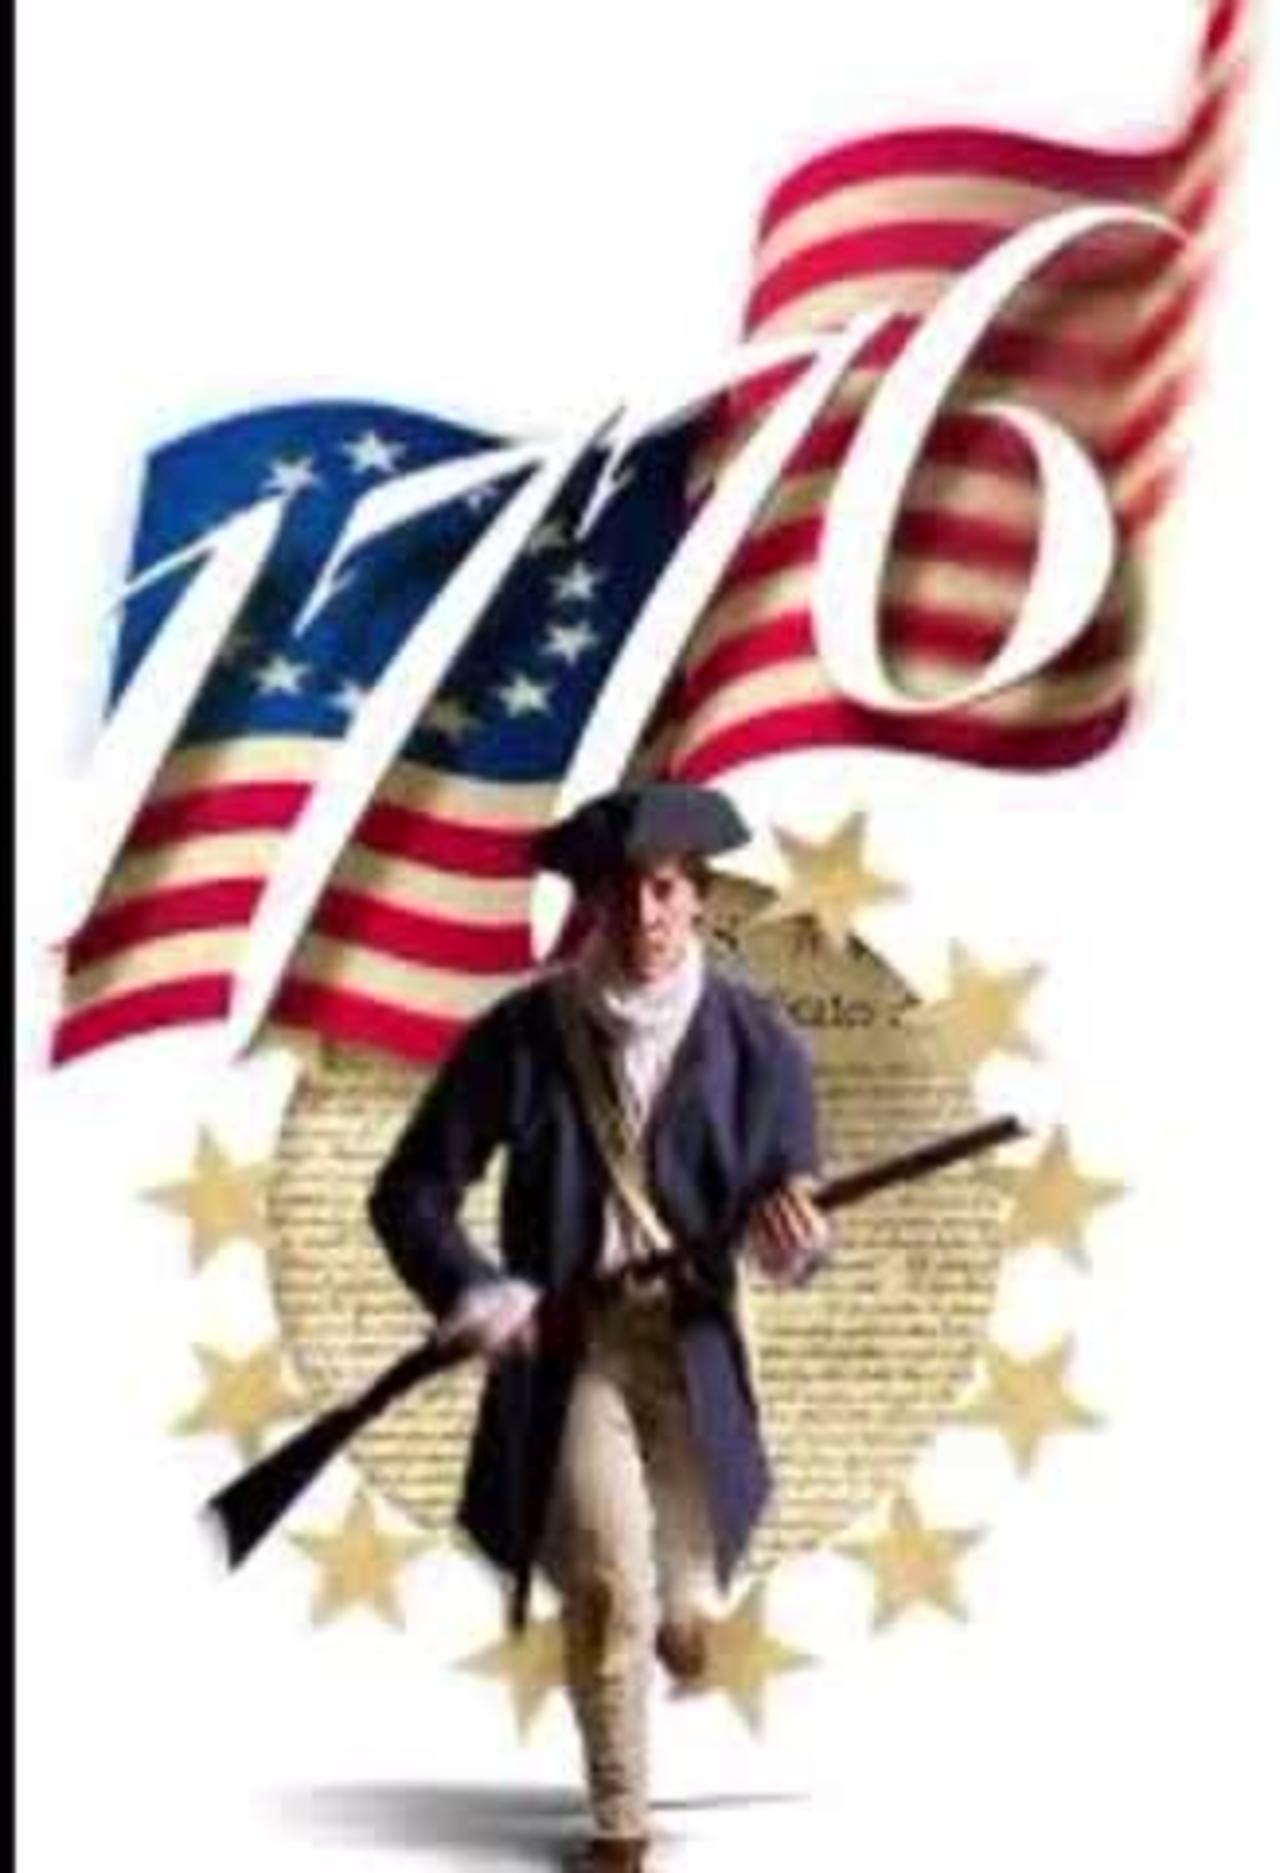 Live - 1776 Restoration movement - Bunker Hill WV